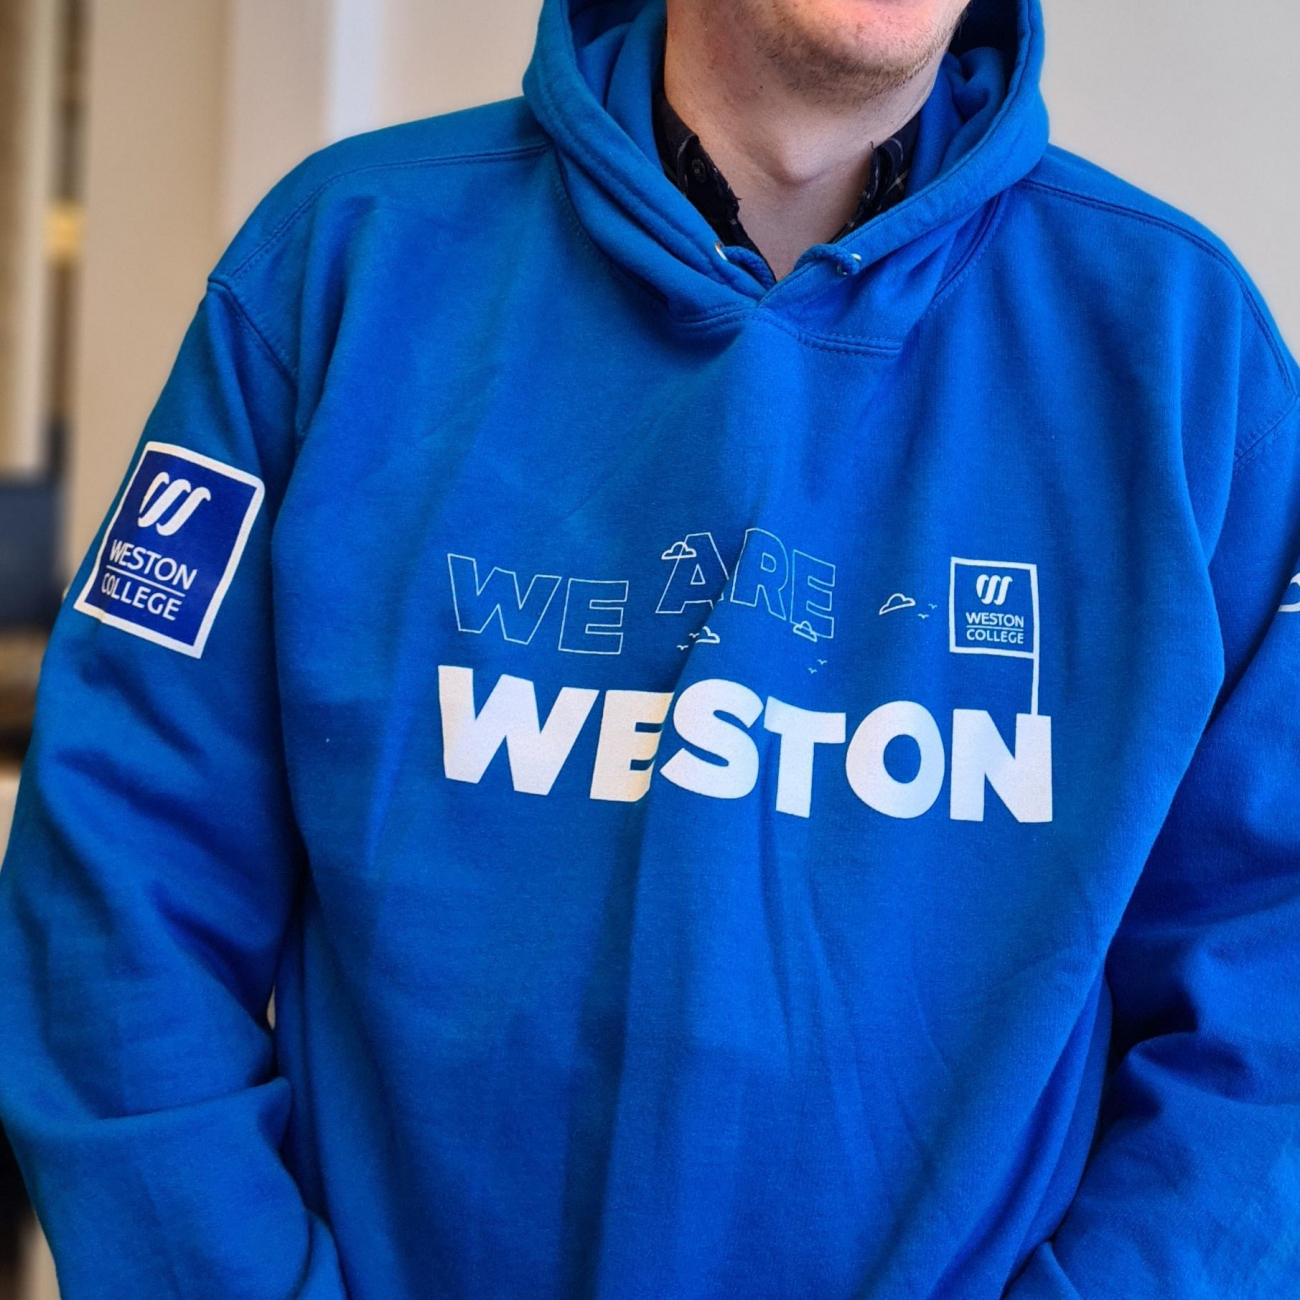 student wearing blue weston college hoodie